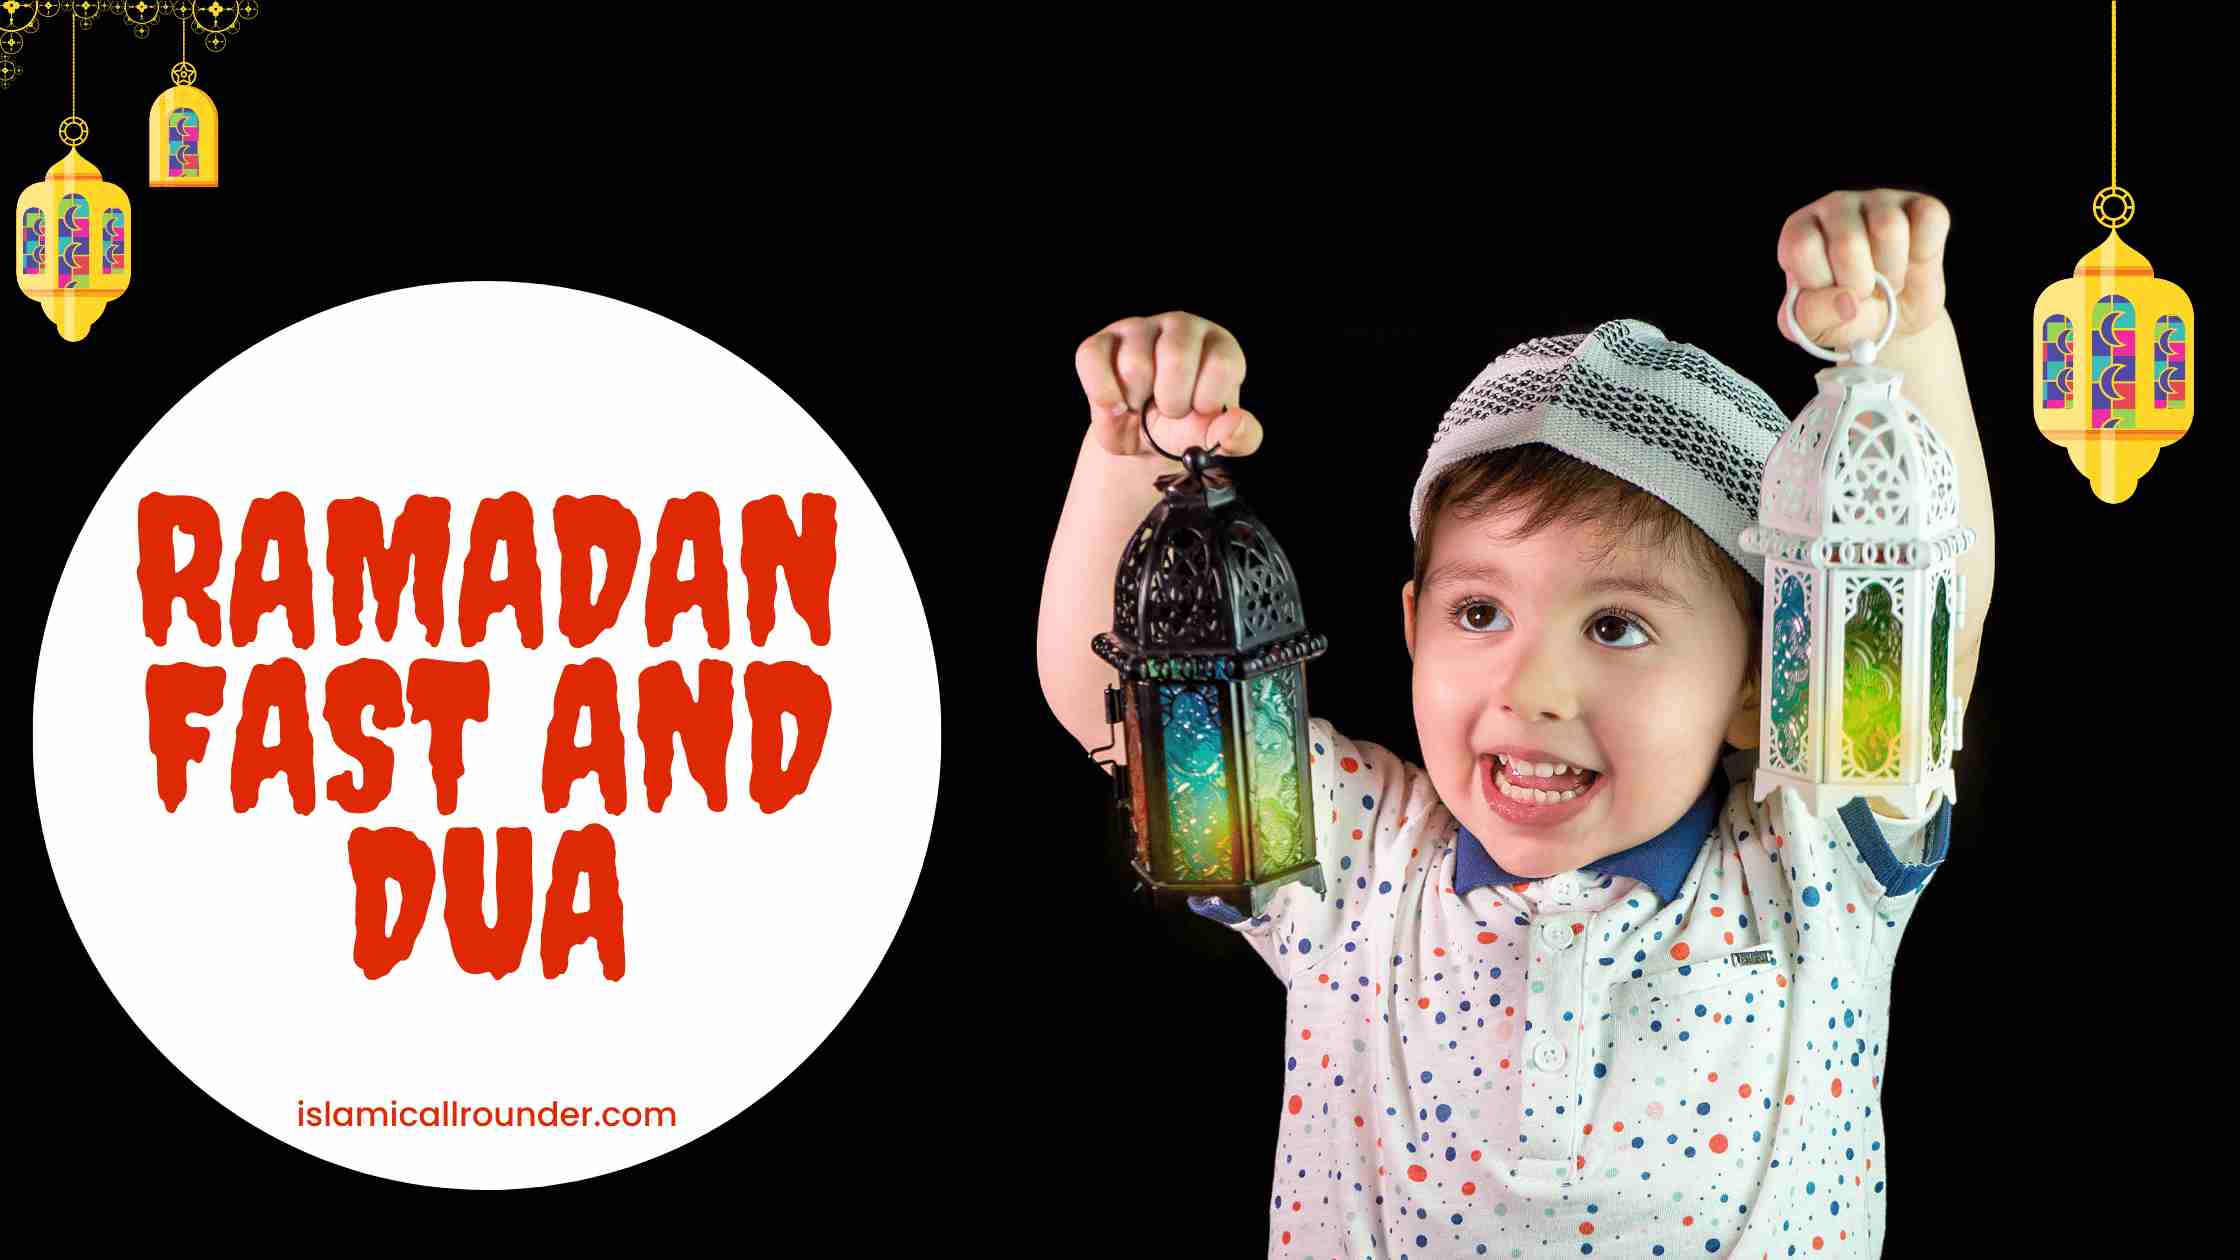 Ramadan Fast and Dua